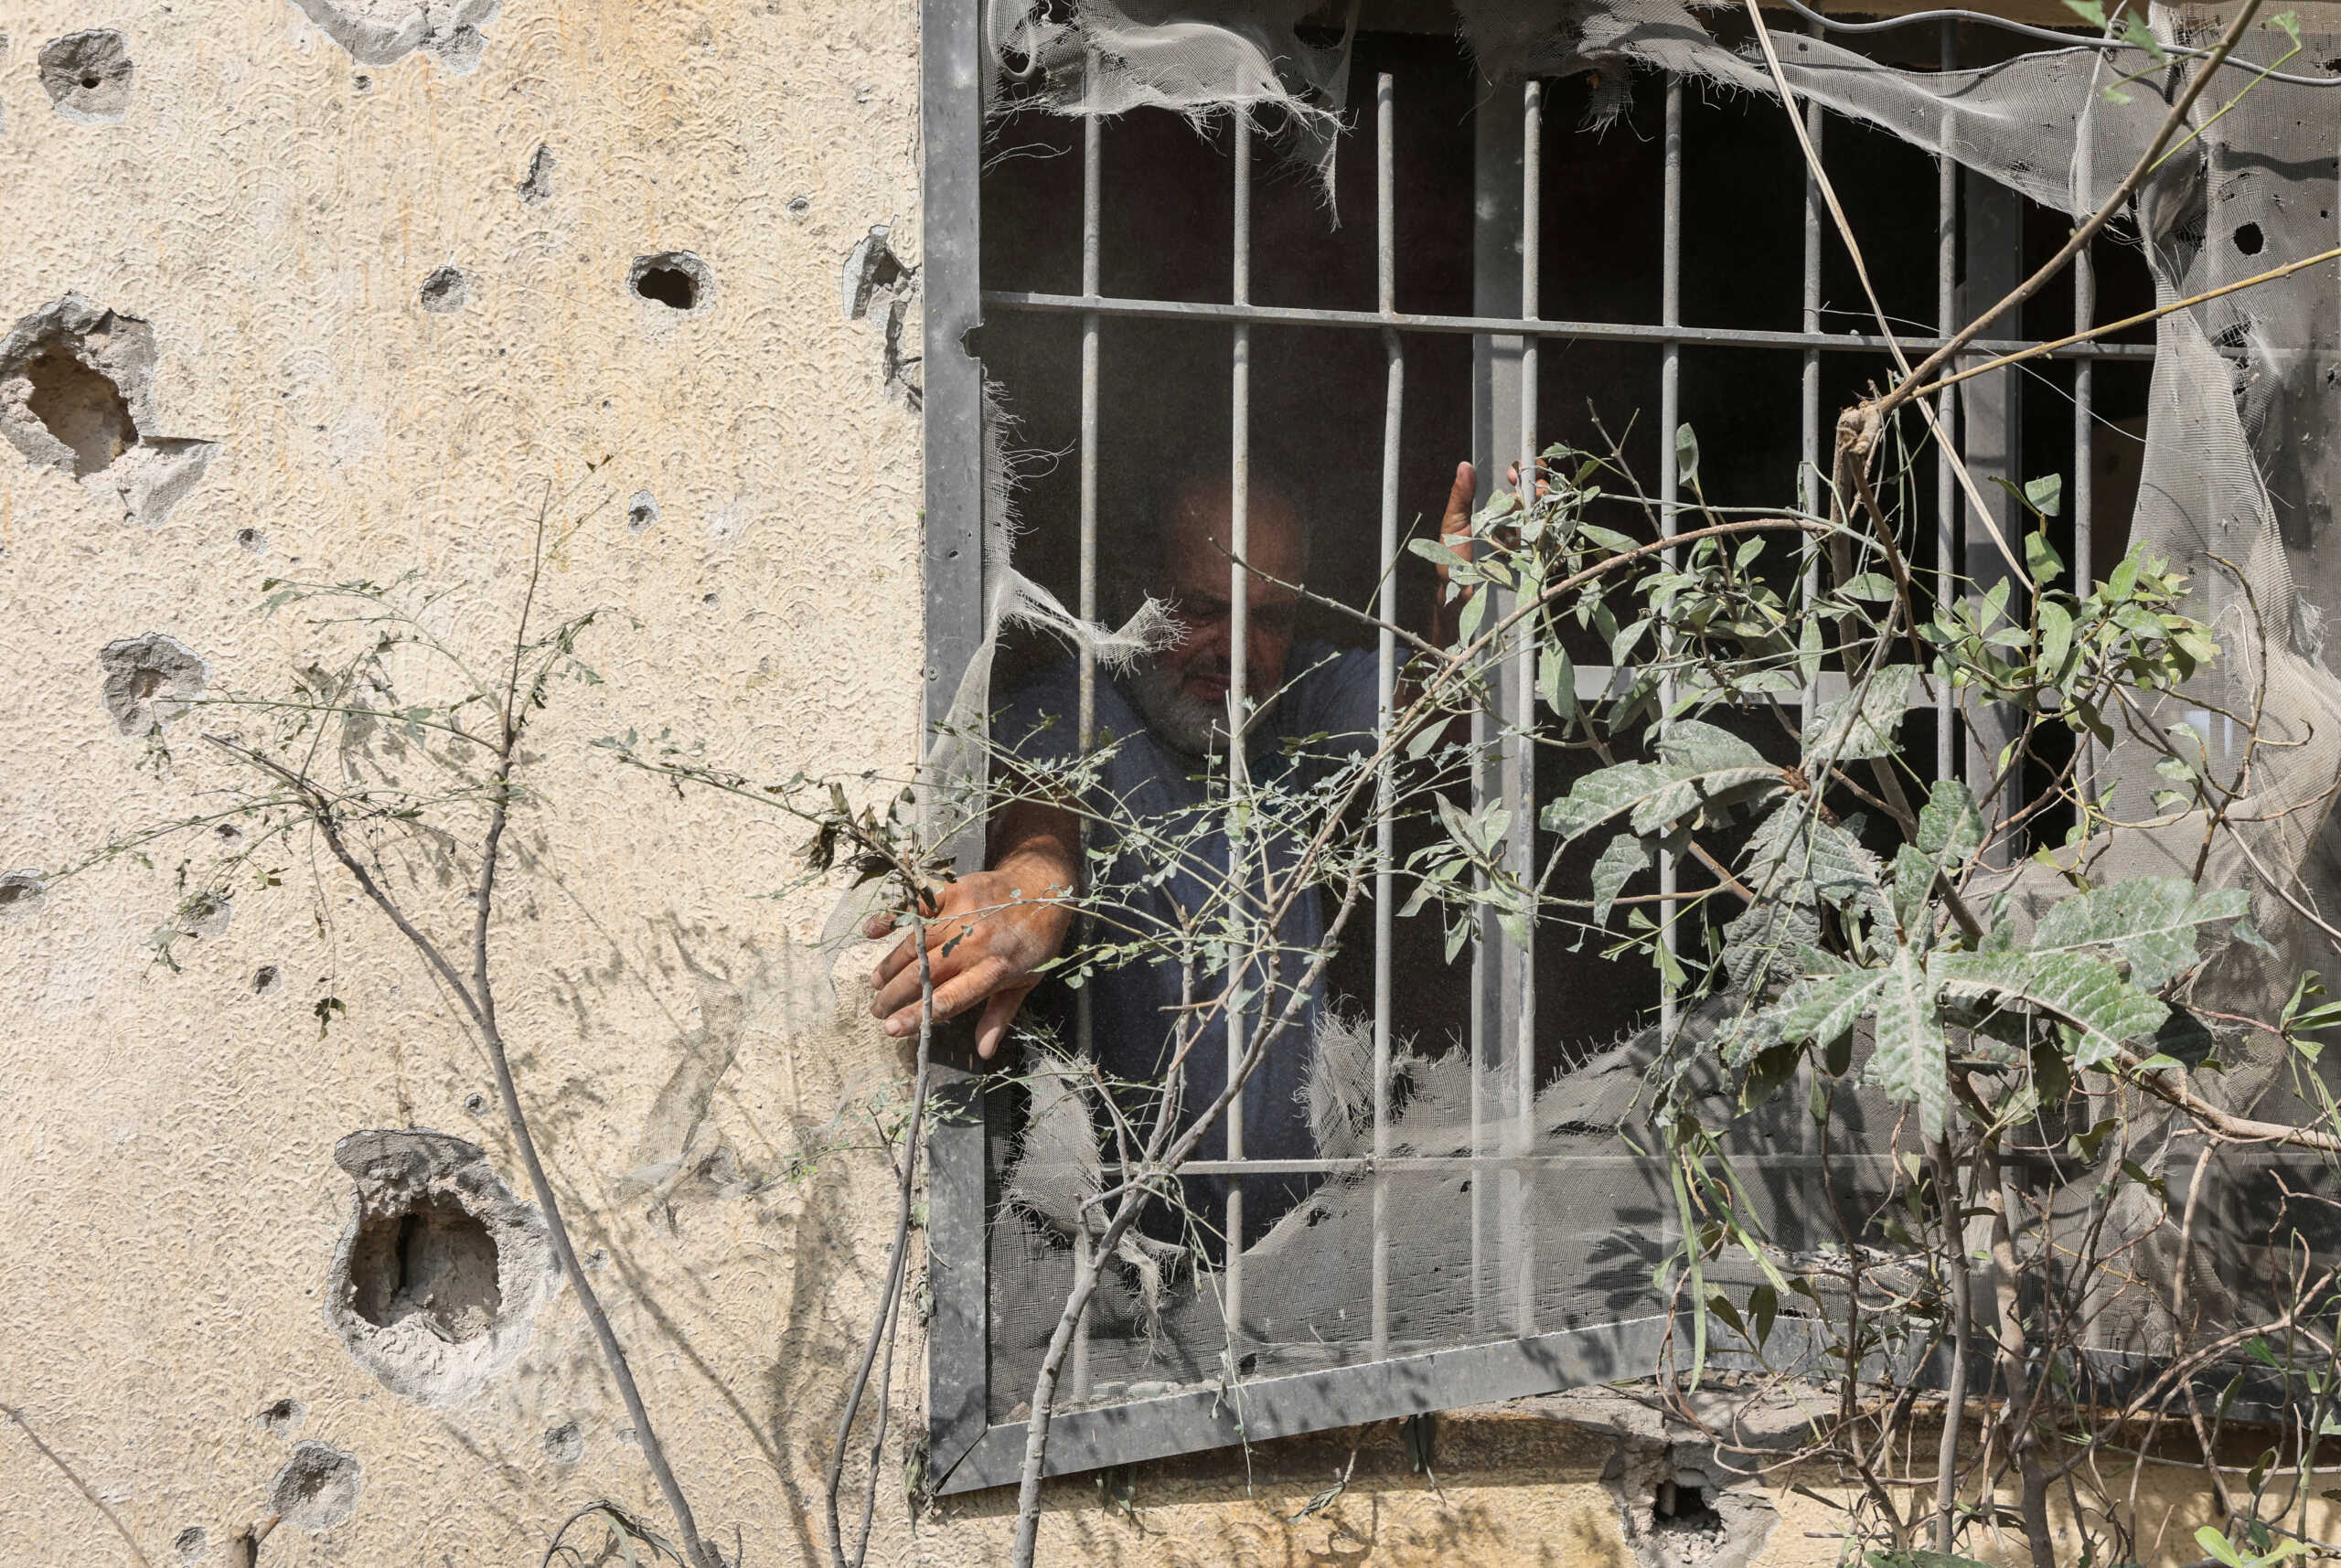 Πόλεμος στο Ισραήλ: «Άμαχοι έχουν σκοτωθεί με αγριότητα, υπάρχουν αιχμάλωτοι στη Γάζα», λέει Ελληνίδα παιδίατρος